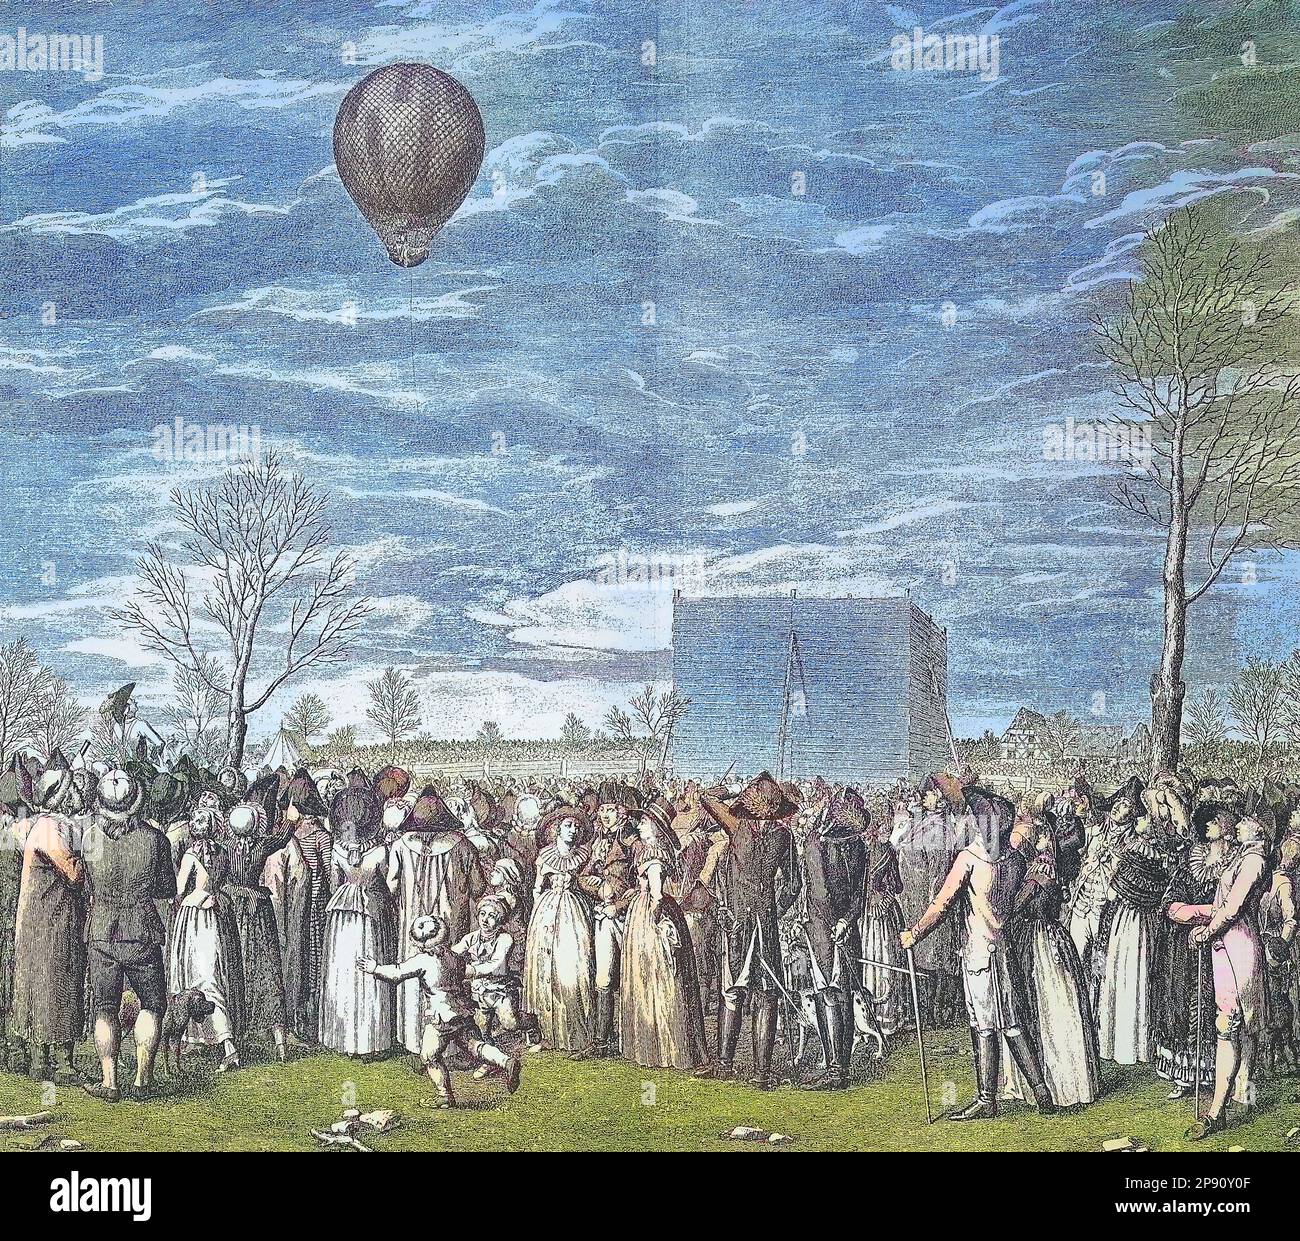 Ballonfahrt in Nürnberg, Deutschland, von Jean-Pierre Blanchard, 1753 - 1809, einem französischen Erfinder, der als Pionier der Ballonfahrt bekannt ist, Historisch, digital restaurierte Reproduktion von einer Vorlage aus dem 19. Jahrhundert Stock Photo